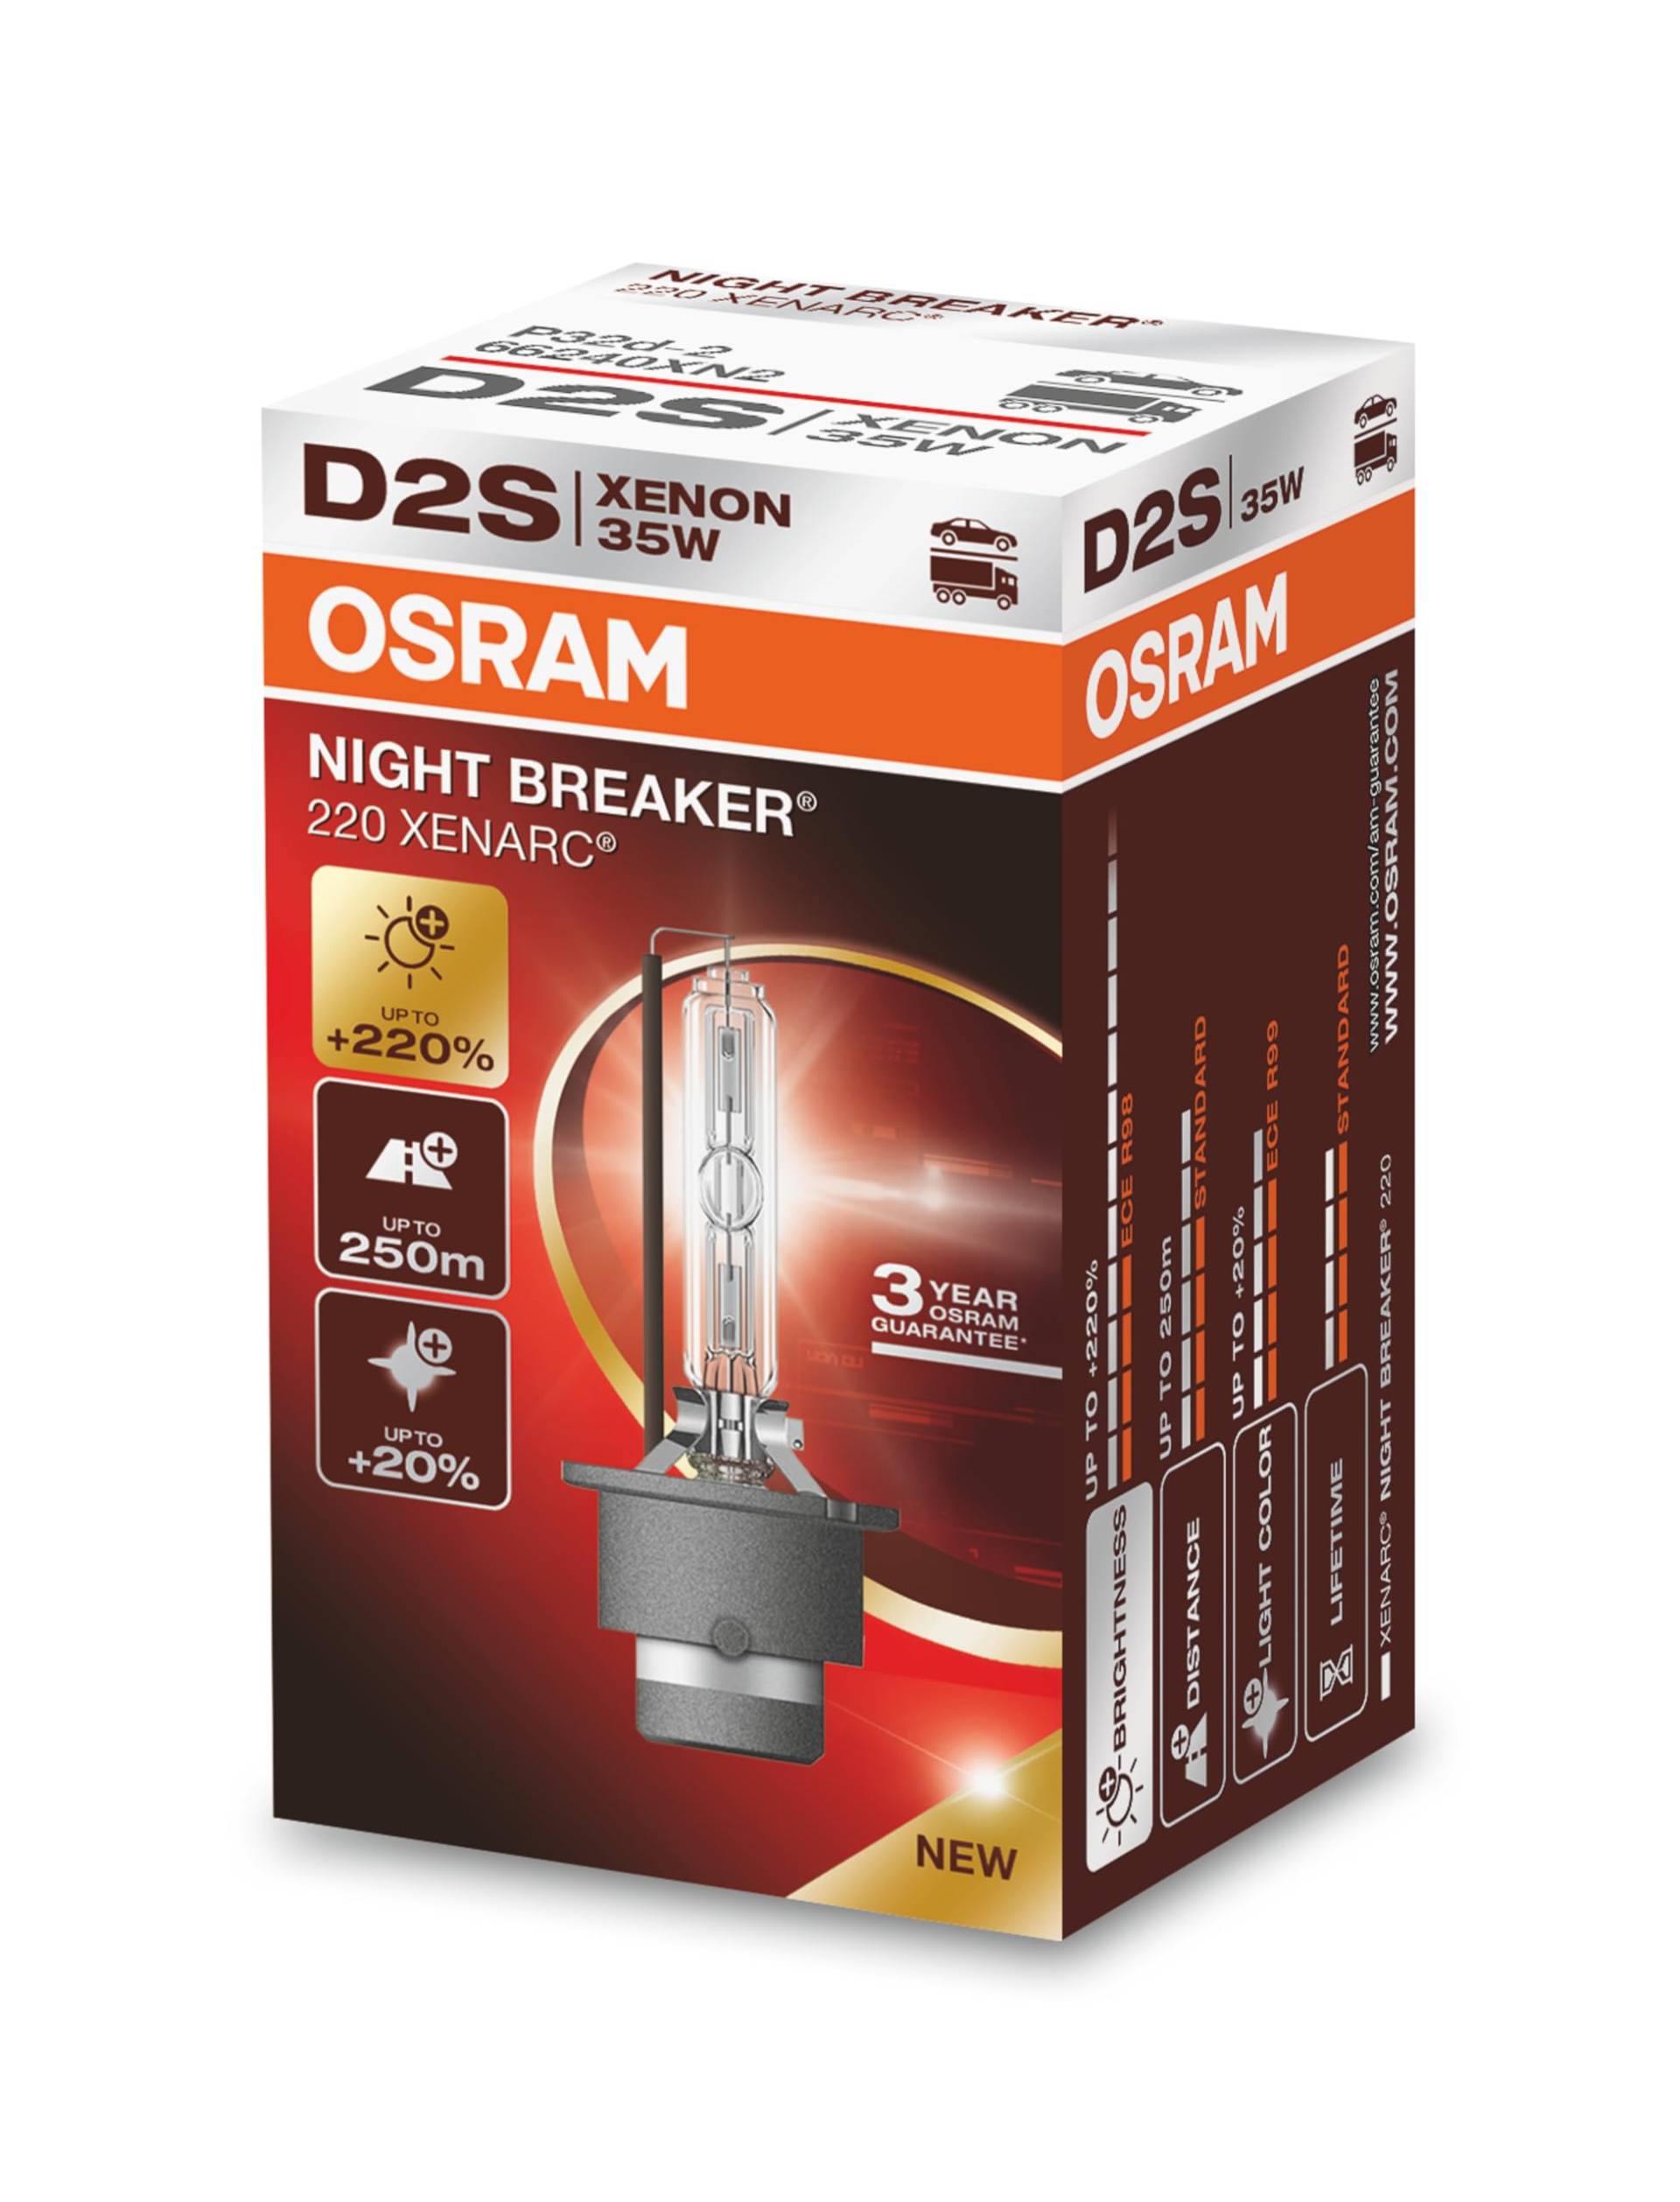 OSRAM XENARC NIGHT BREAKER 220, D2S, 220% mehr Helligkeit, Xenon-Scheinwerferlampe, 66240XN2, Faltschachtel (1 Lampe) von Osram